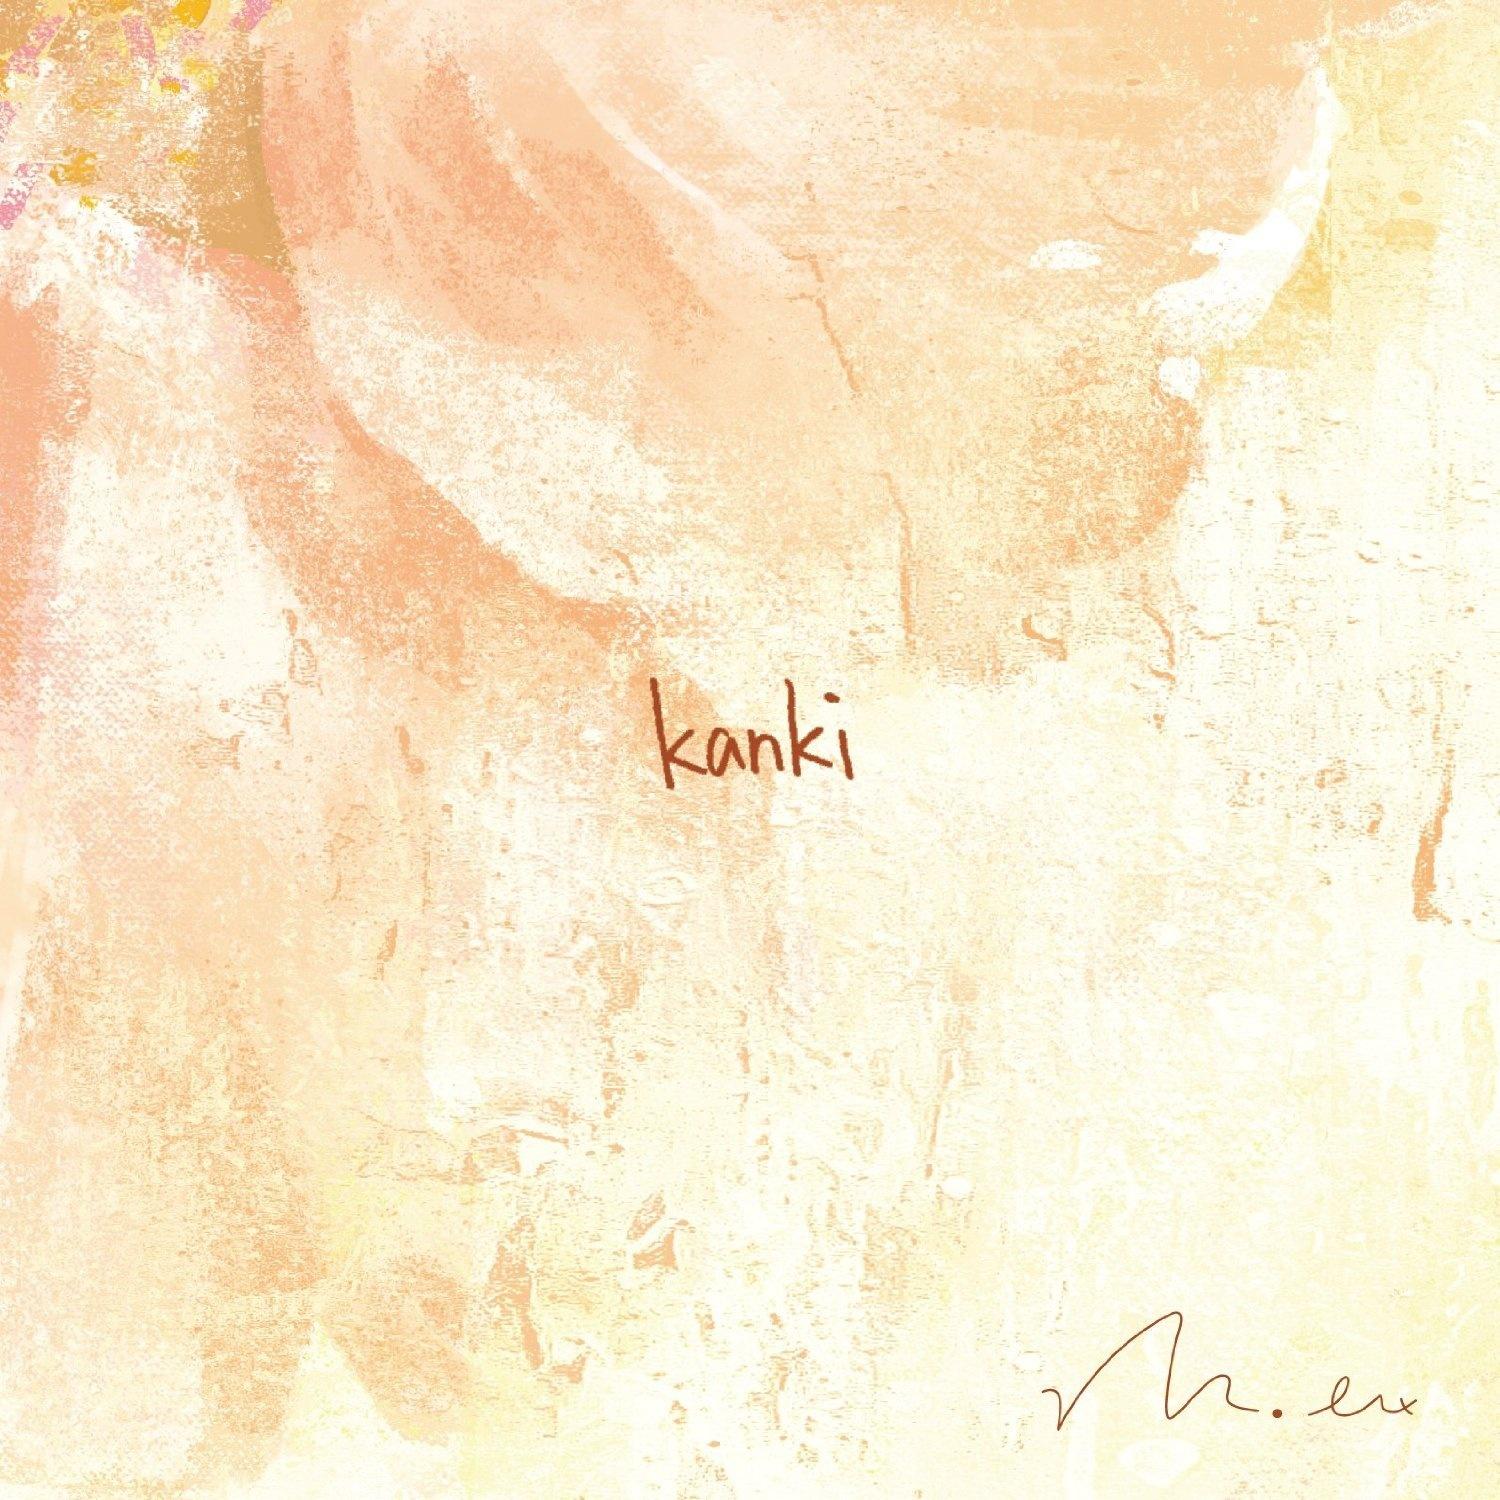 ゆらぎ歌词 歌手mol-74-专辑kanki-单曲《ゆらぎ》LRC歌词下载